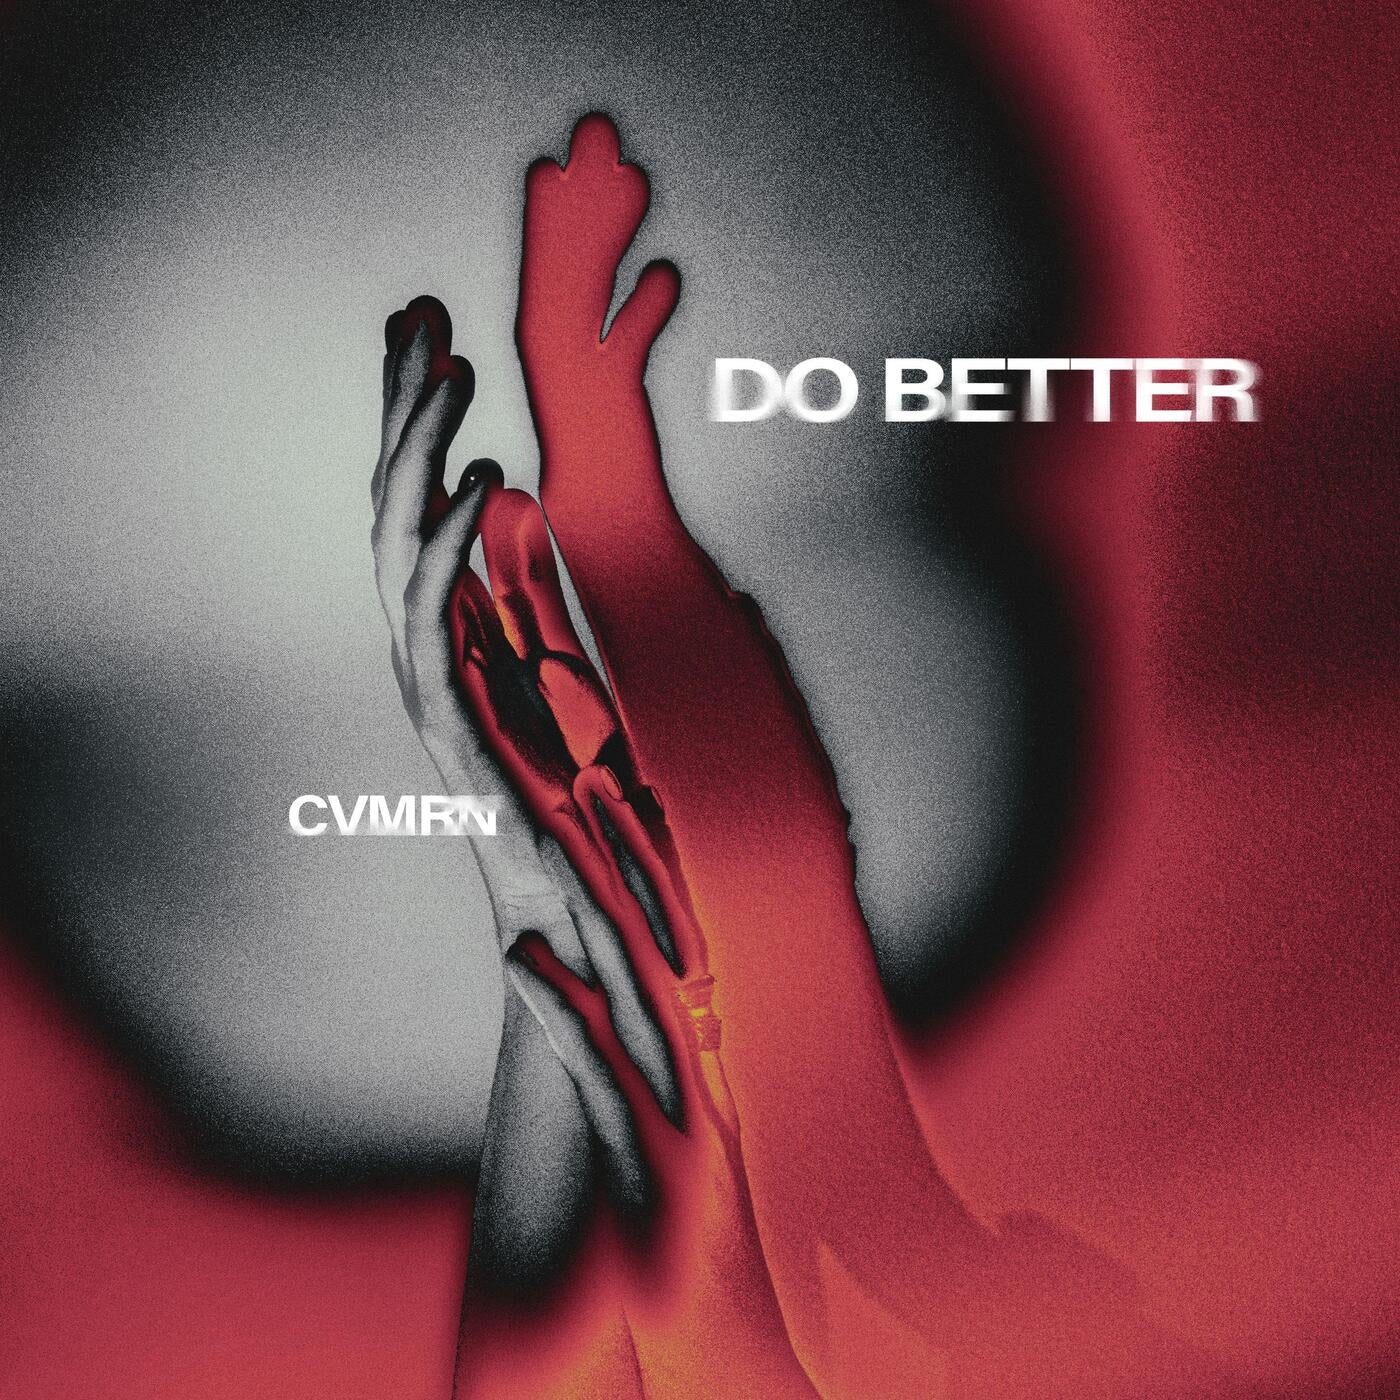 CVMRN - Do Better (Extended Mix)